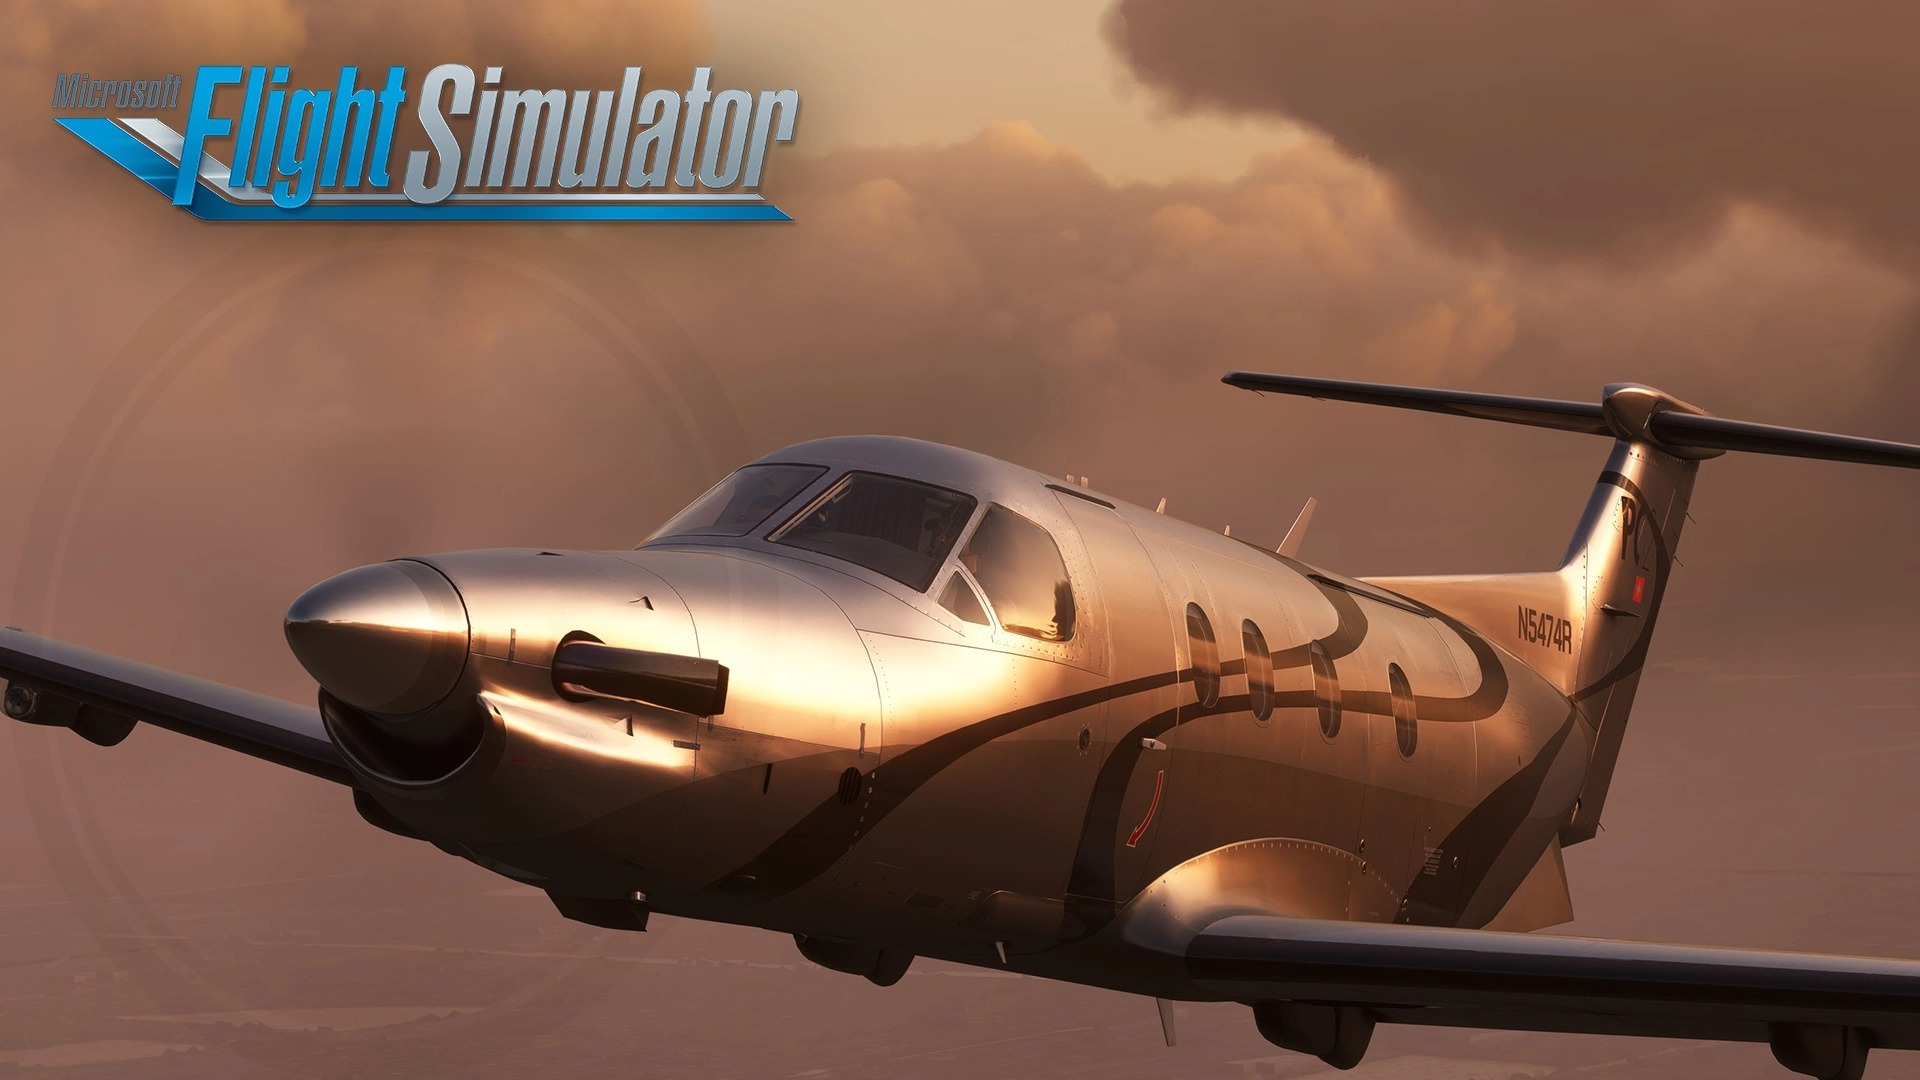 Video For Le Carenado PC12 est disponible dans Microsoft Flight Simulator